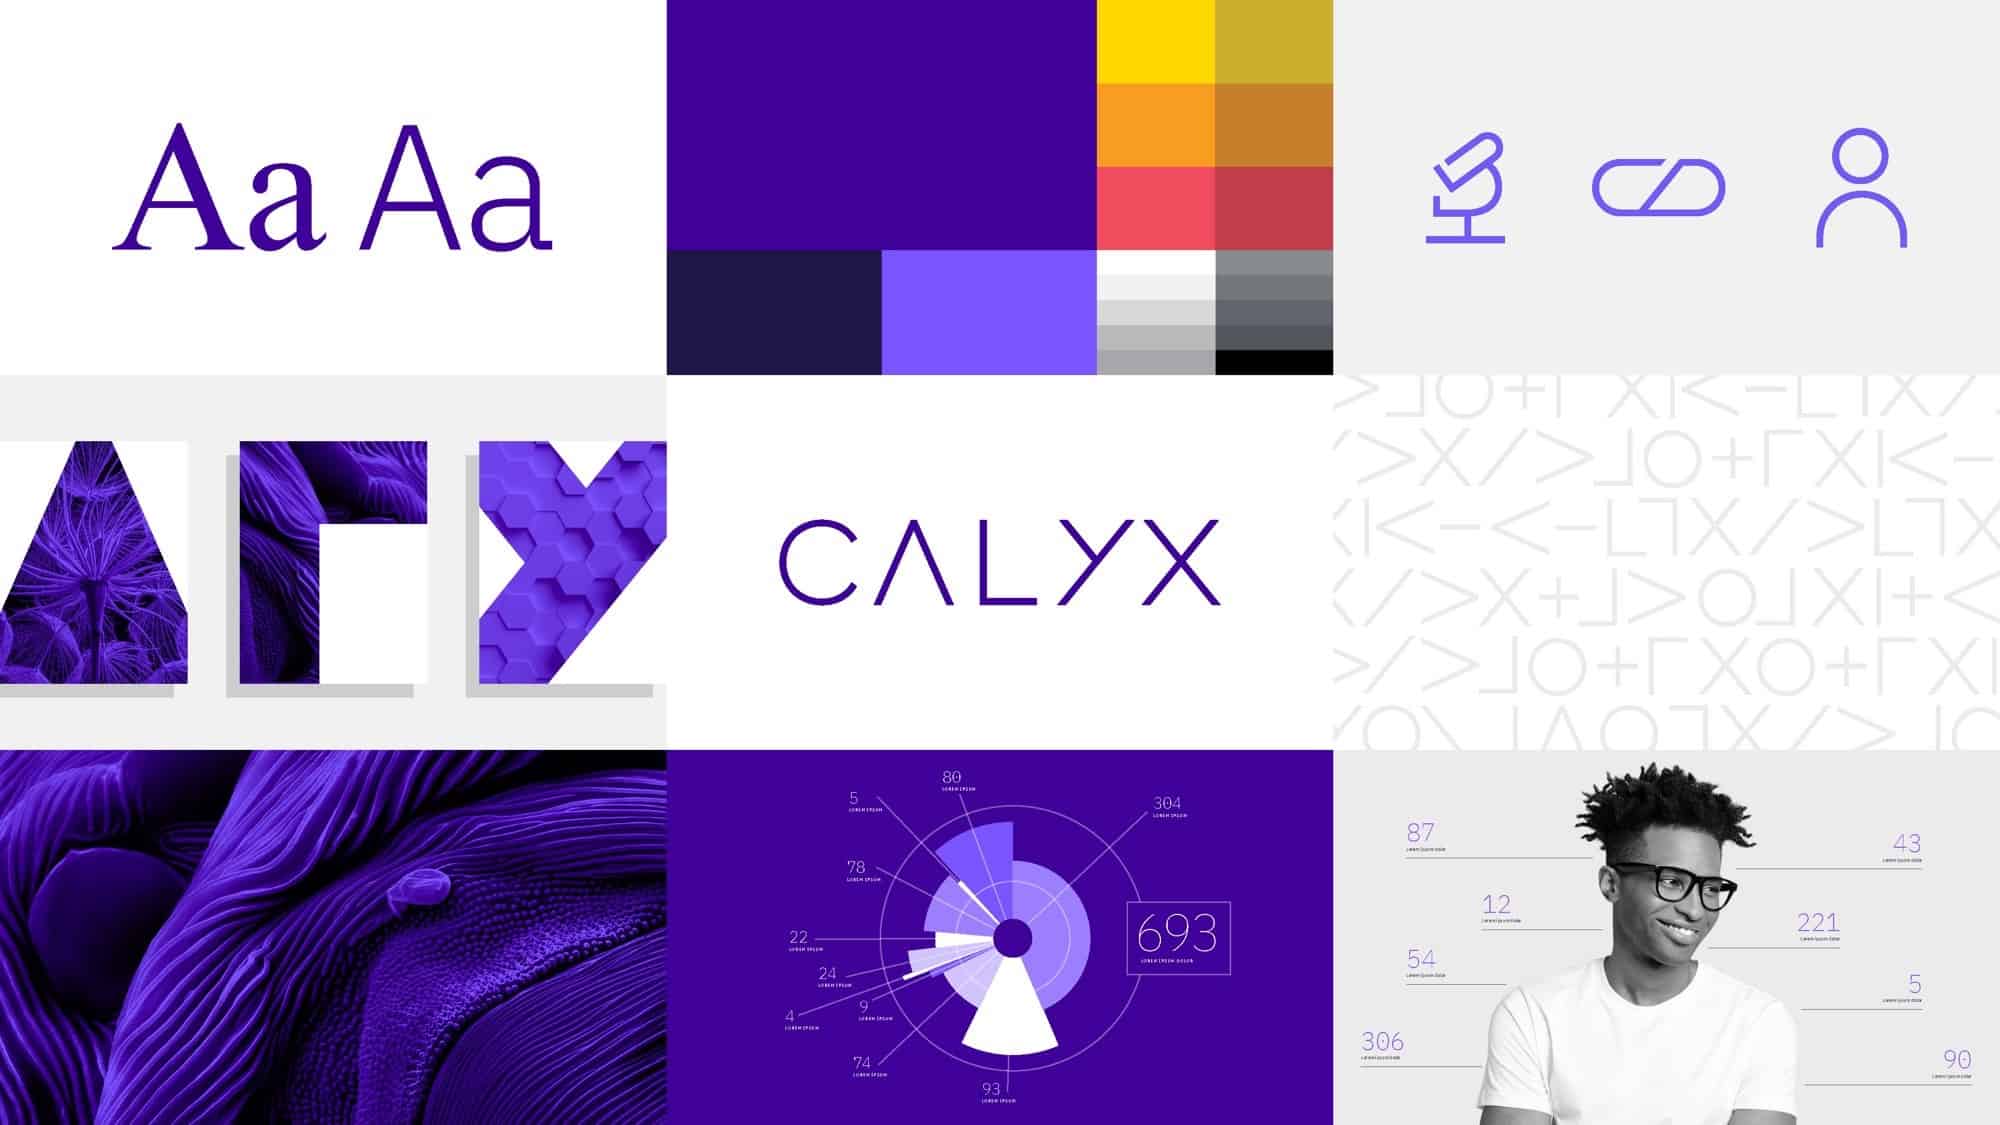 Calyx - Brand examples